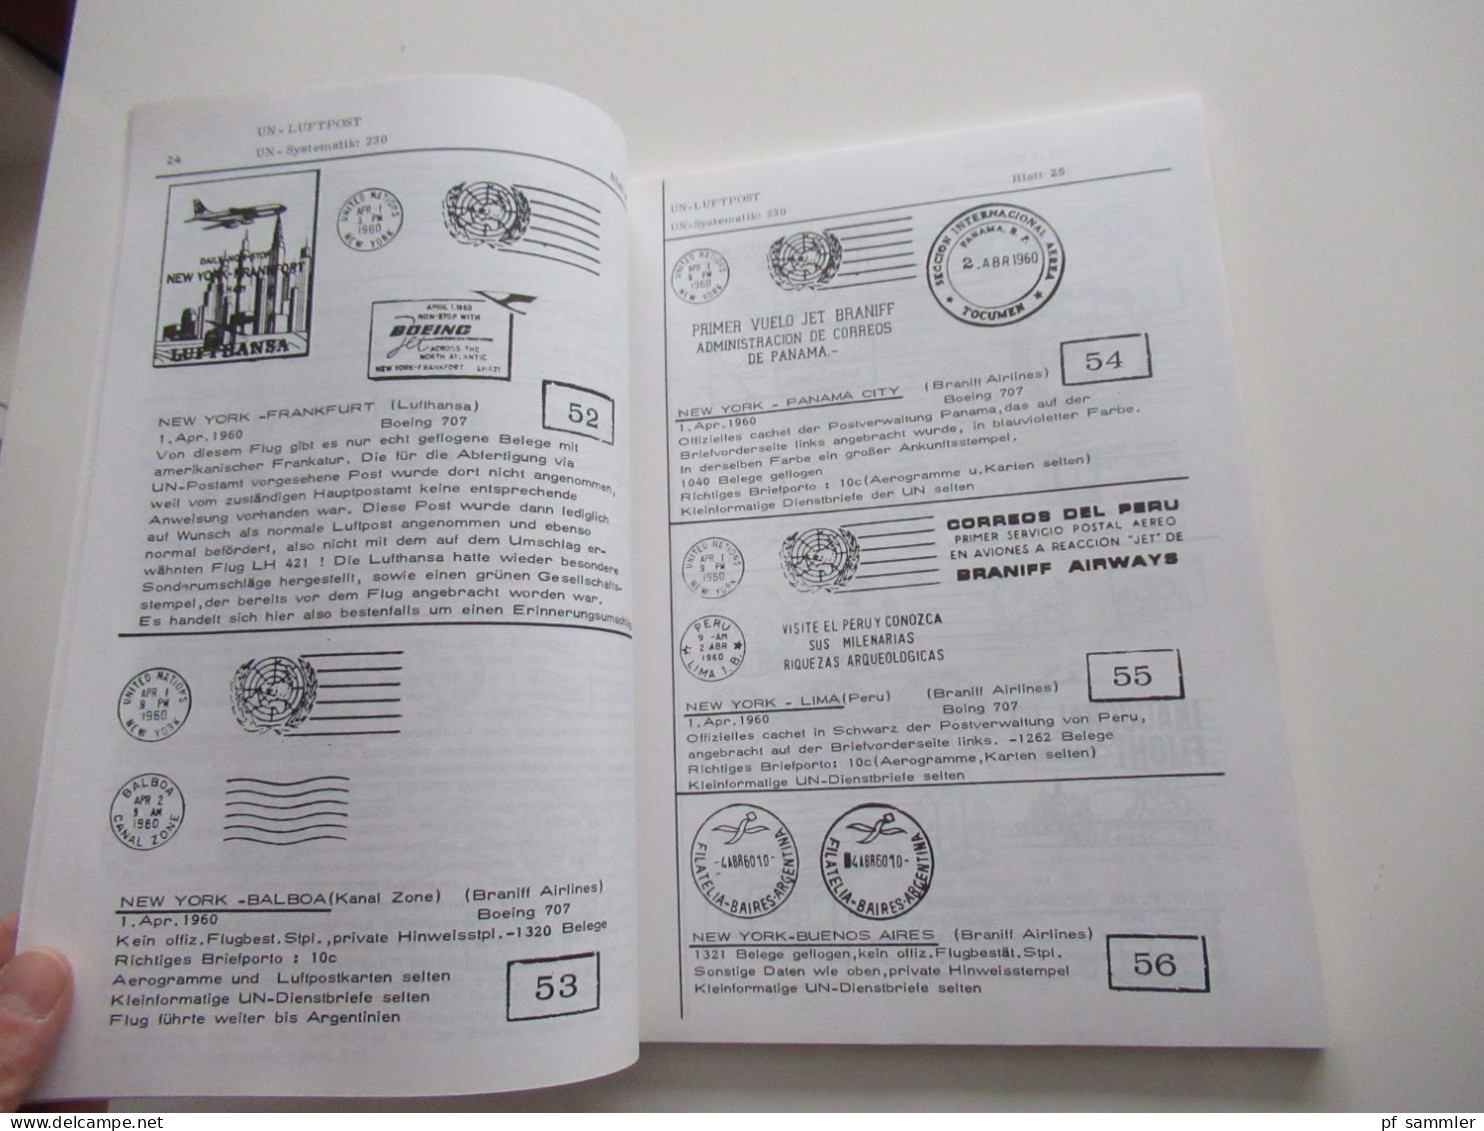 UNO - Philatelie, Handbuch hb 76, Erstflugbriefe der Vereinten Nationen, United Nations first Flight Covers 1959 - 1976